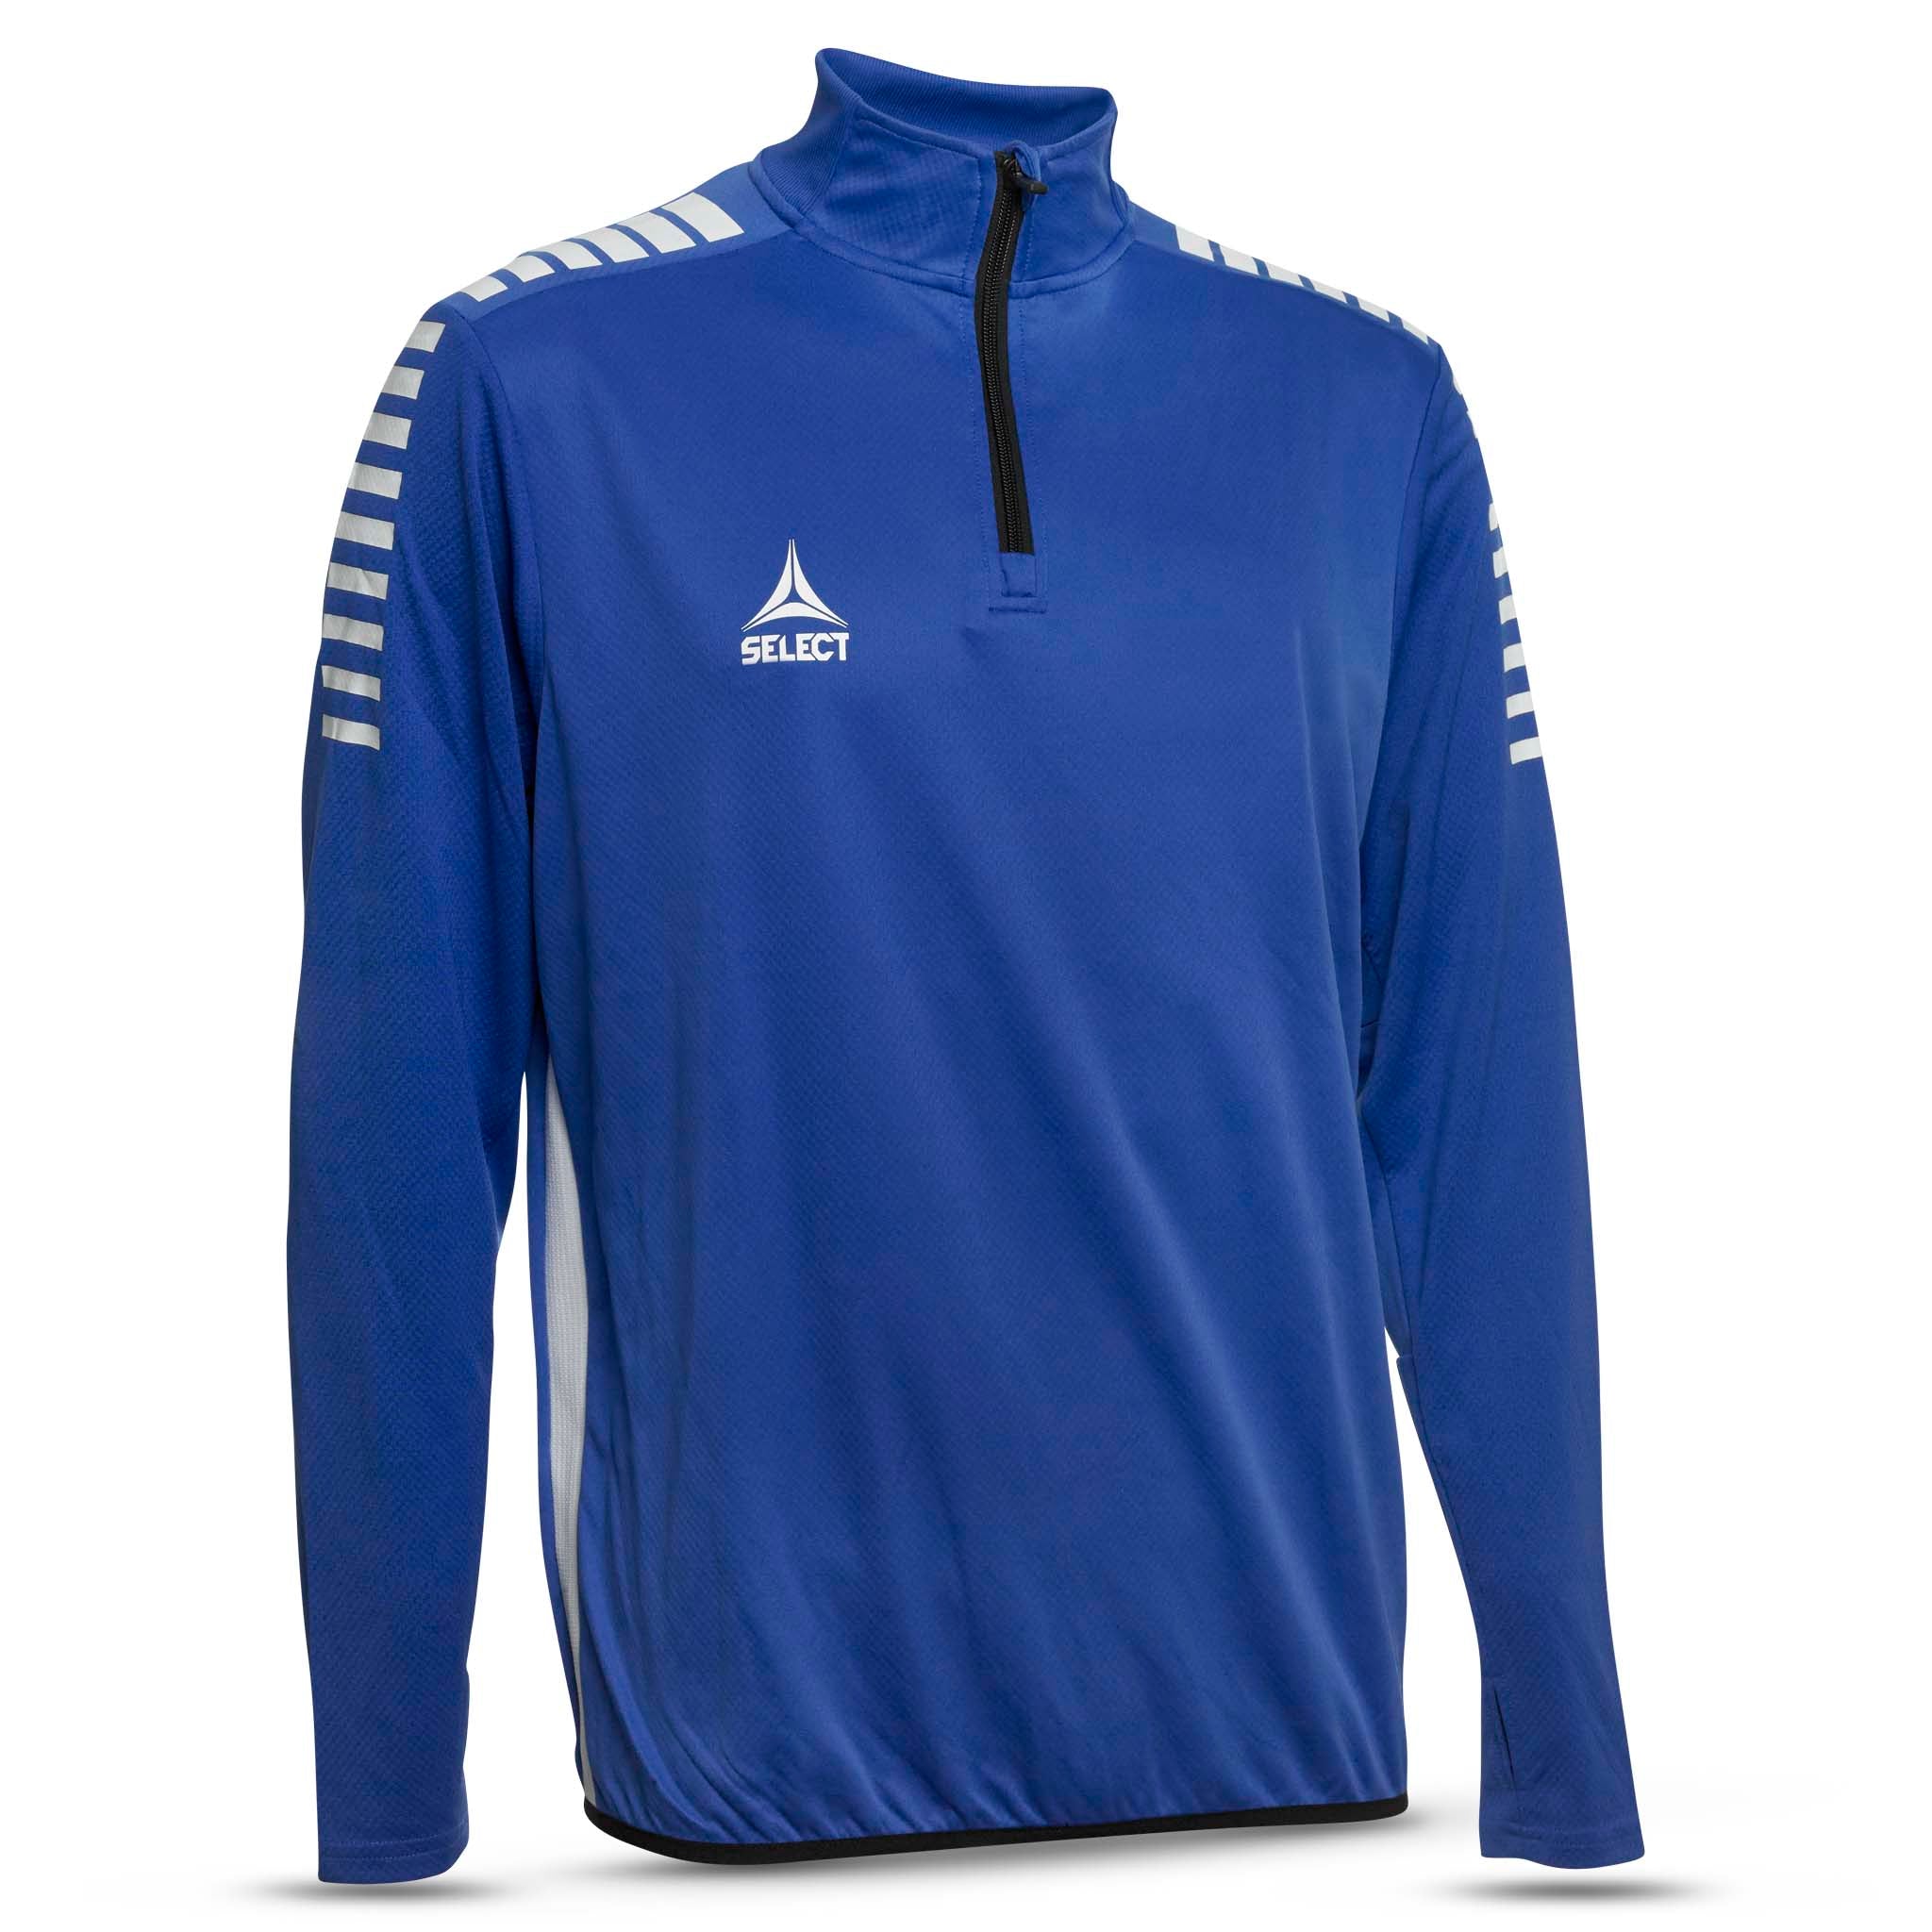 Sweatshirt för träning - Monaco #färg_blå